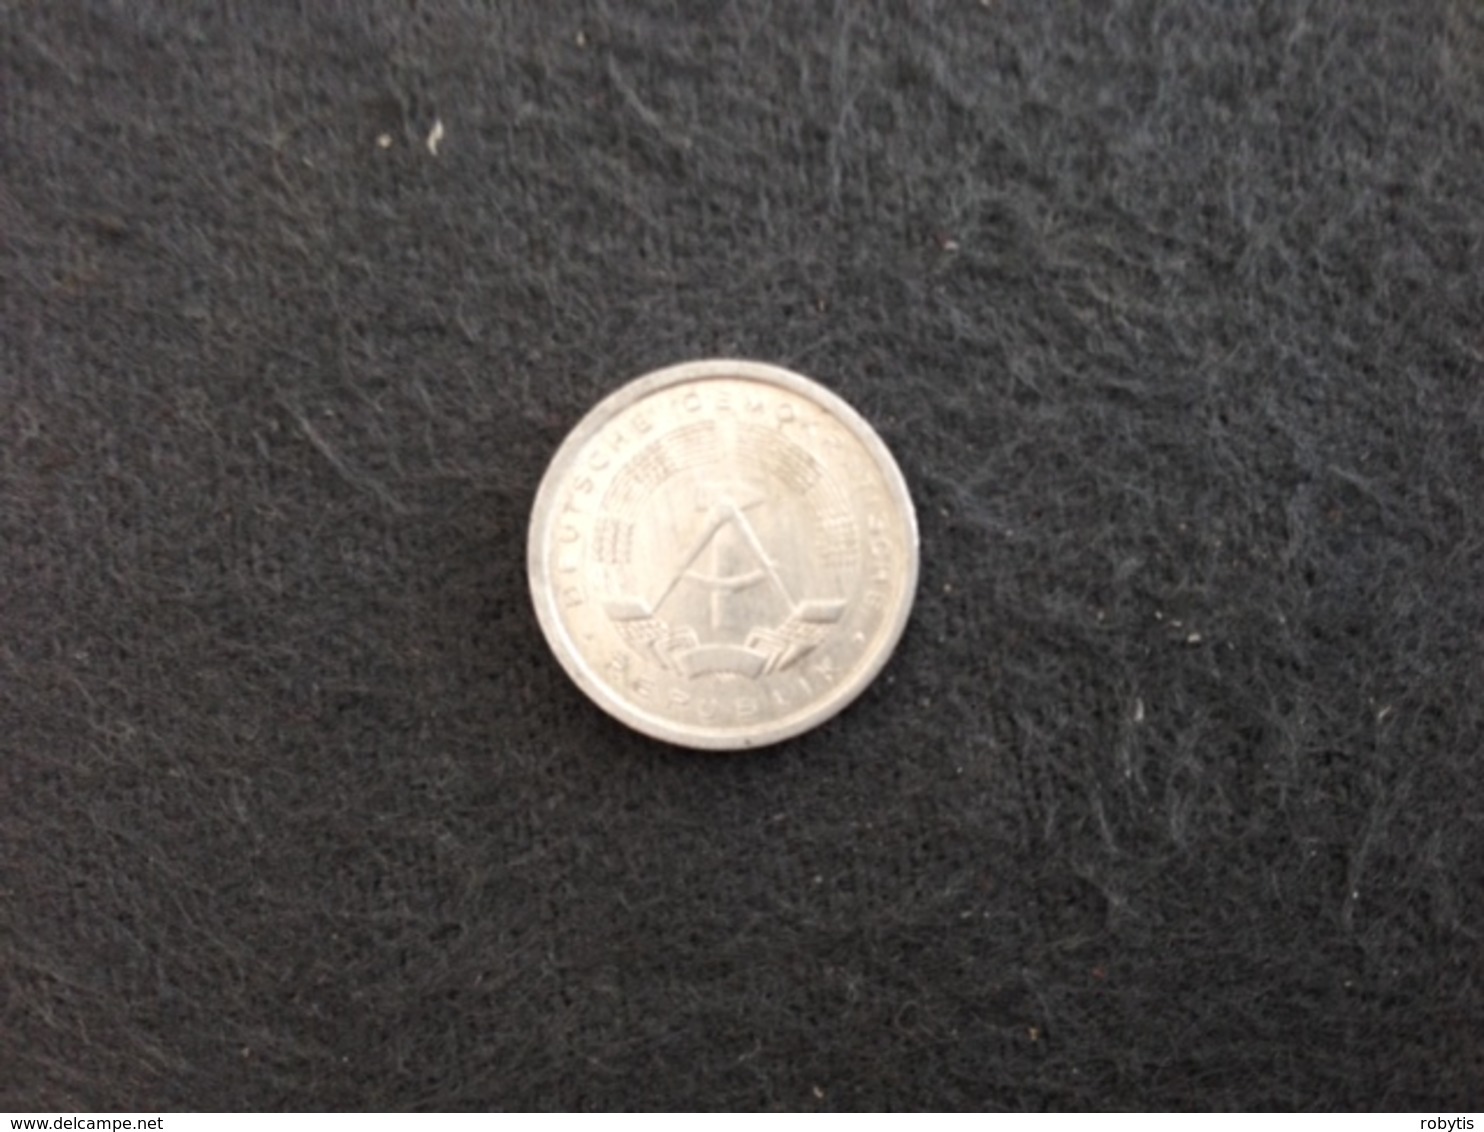 1 Pfennig 1989 A - Germany - GDR - 1 Pfennig